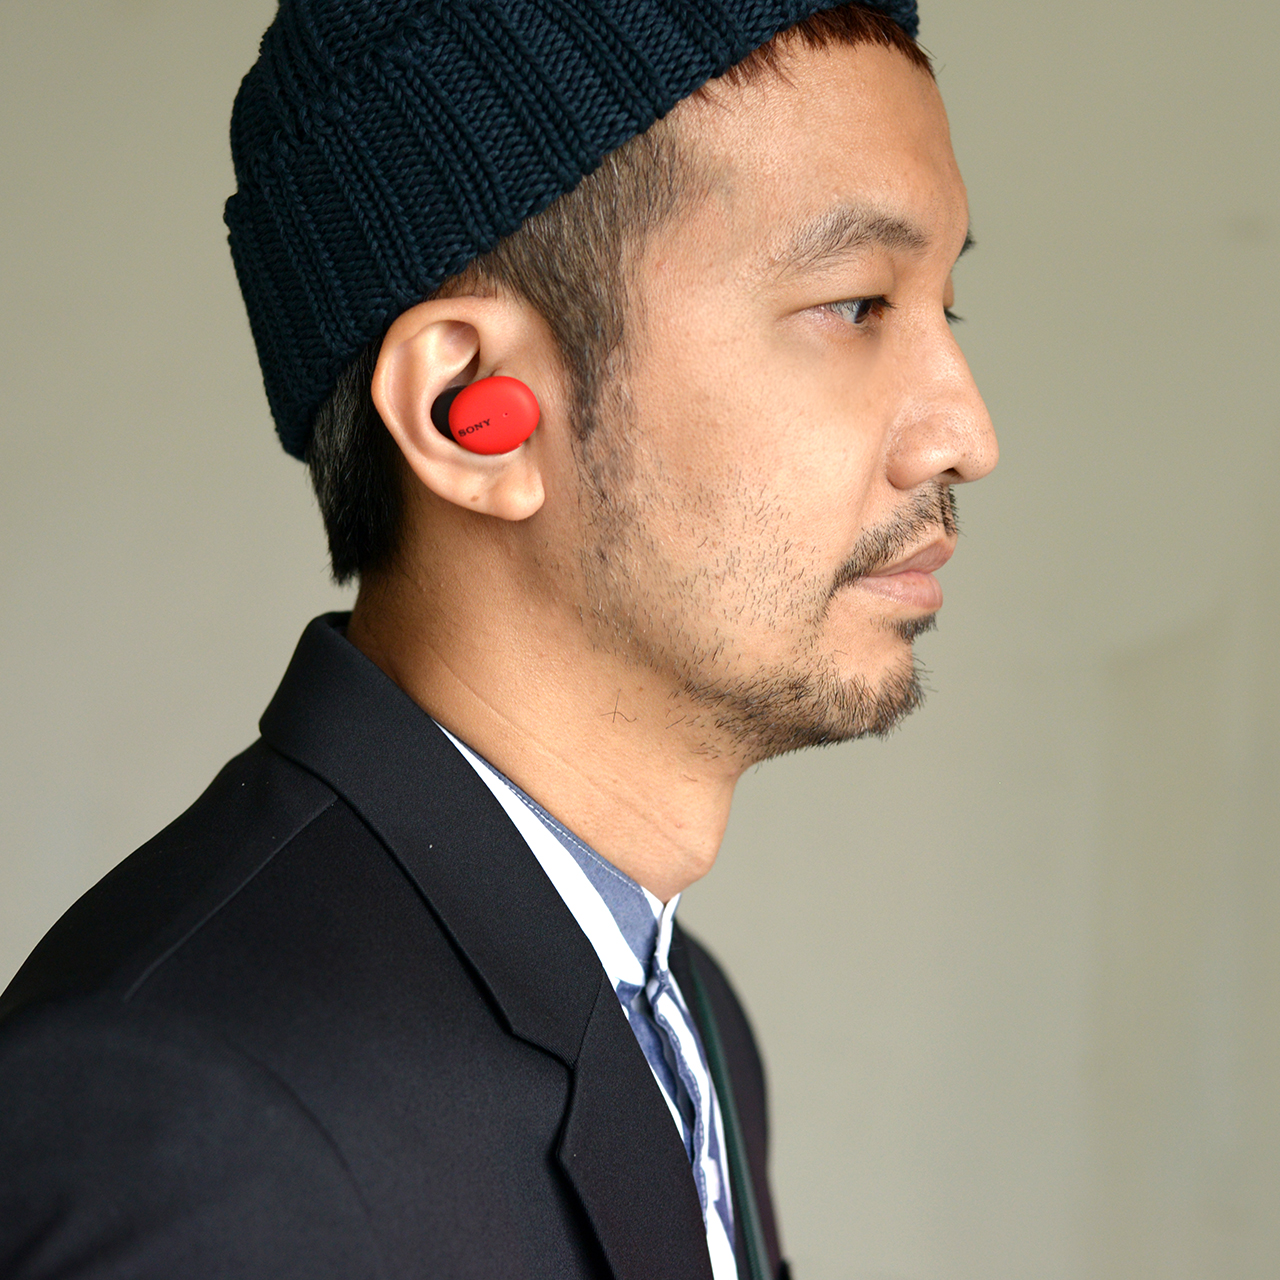 sony,wf-h800,wf-h800 h.ear in 3,sony 耳機,sony 藍芽耳機,真無線藍牙耳機,真無線藍牙耳機 sony,真無線藍牙耳機推薦